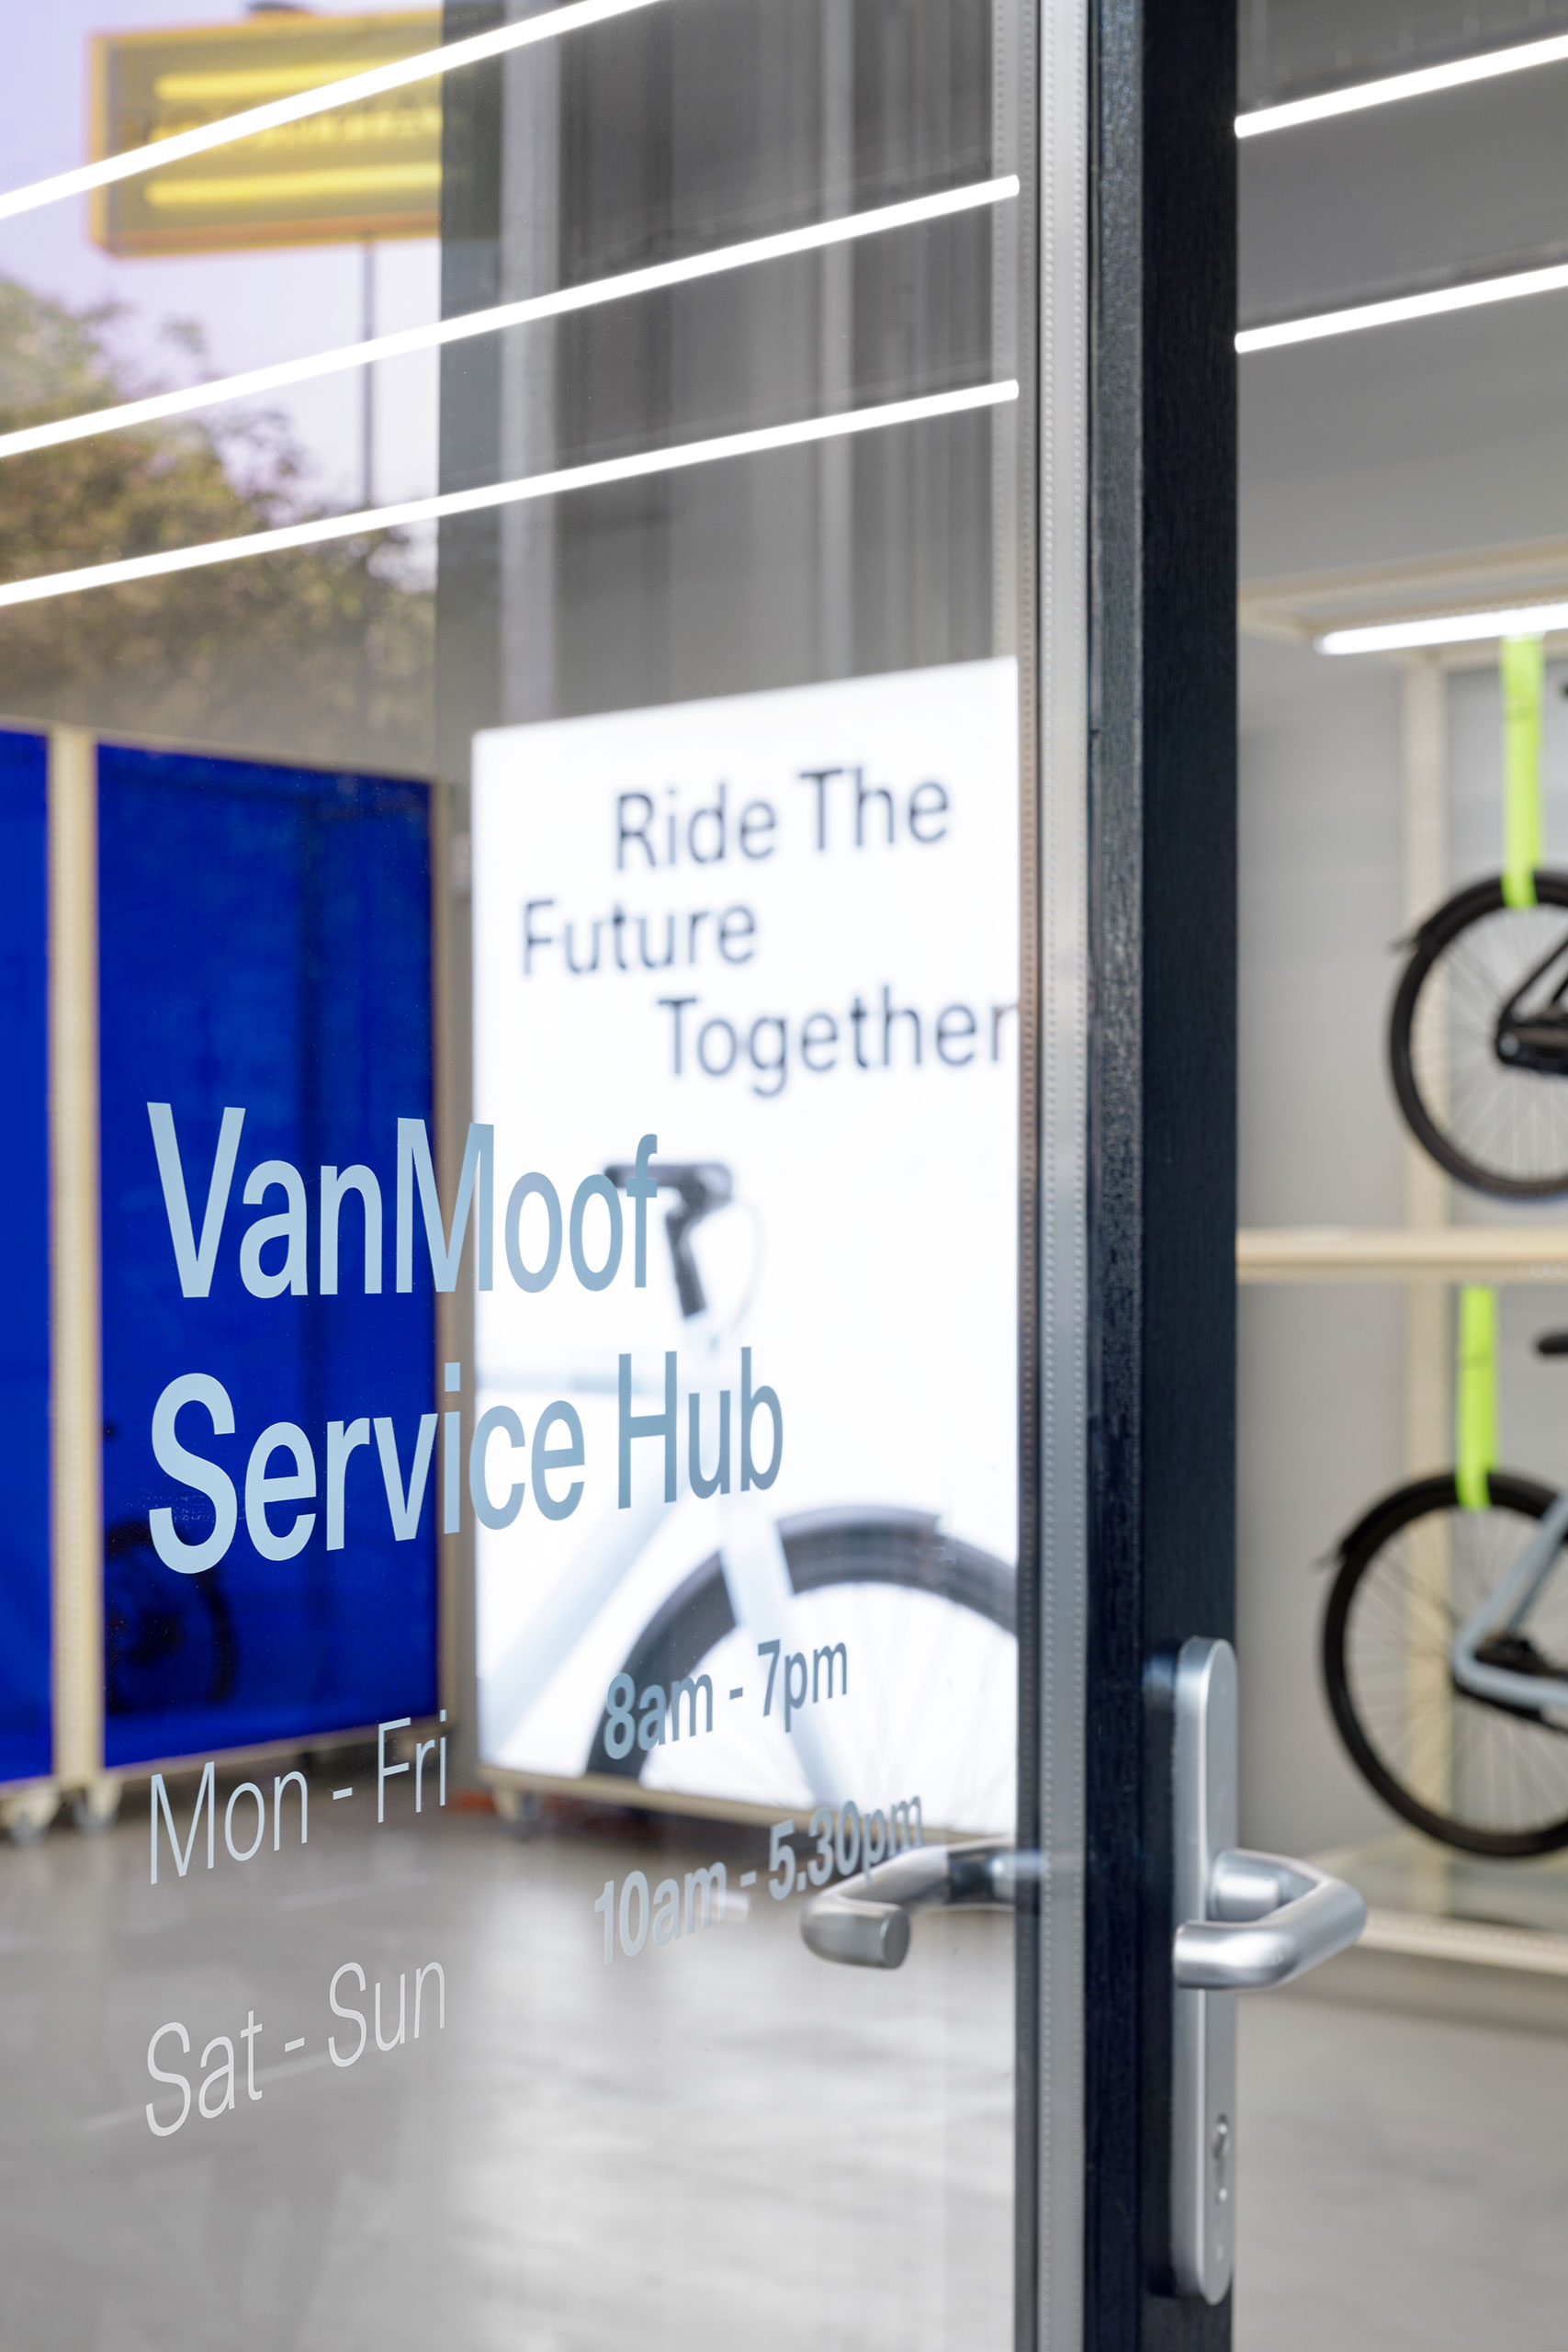 VanMoof Service Hubs